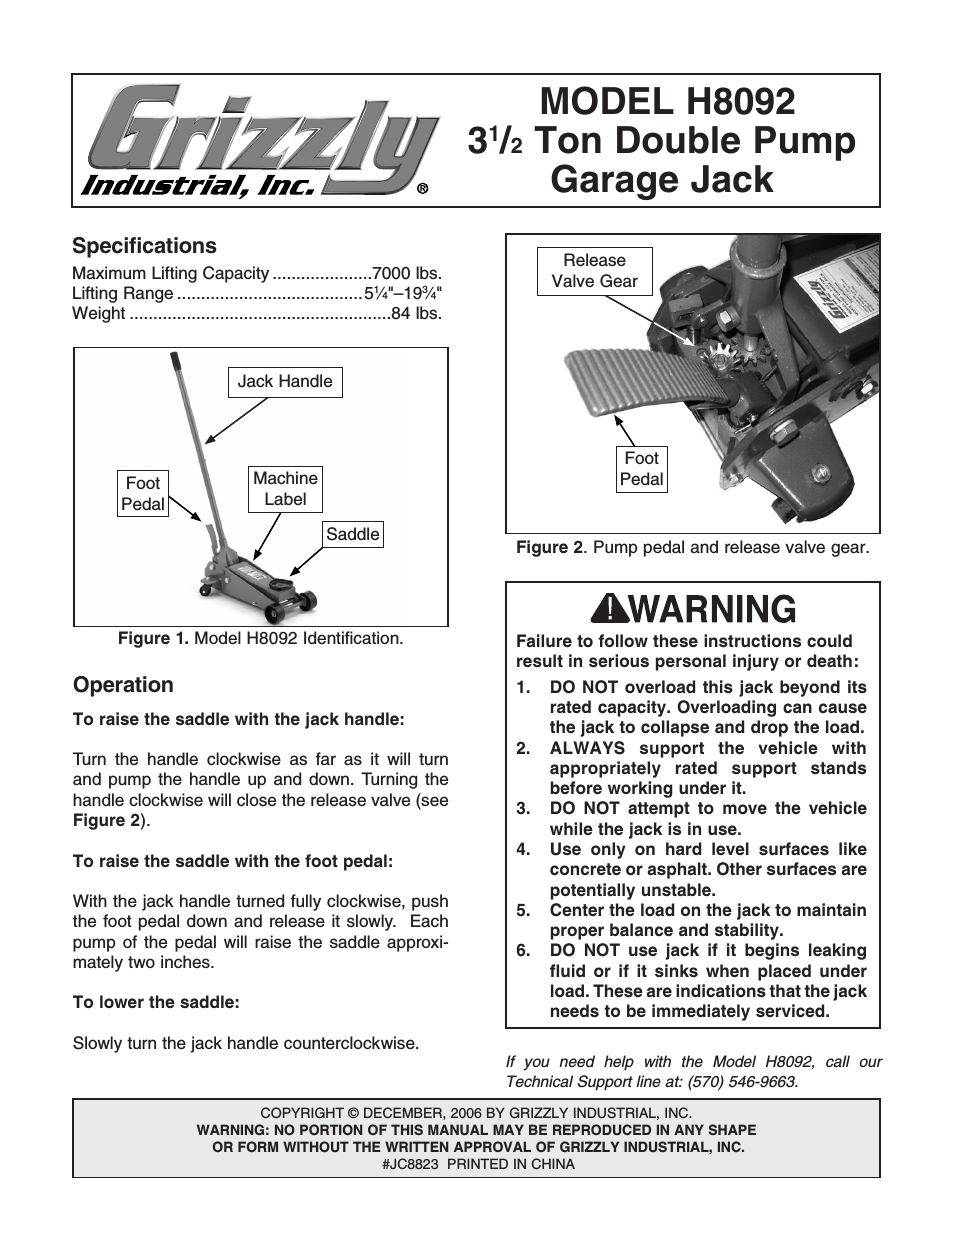 3 1 /2 Ton Double Pump Garage Jack H8092